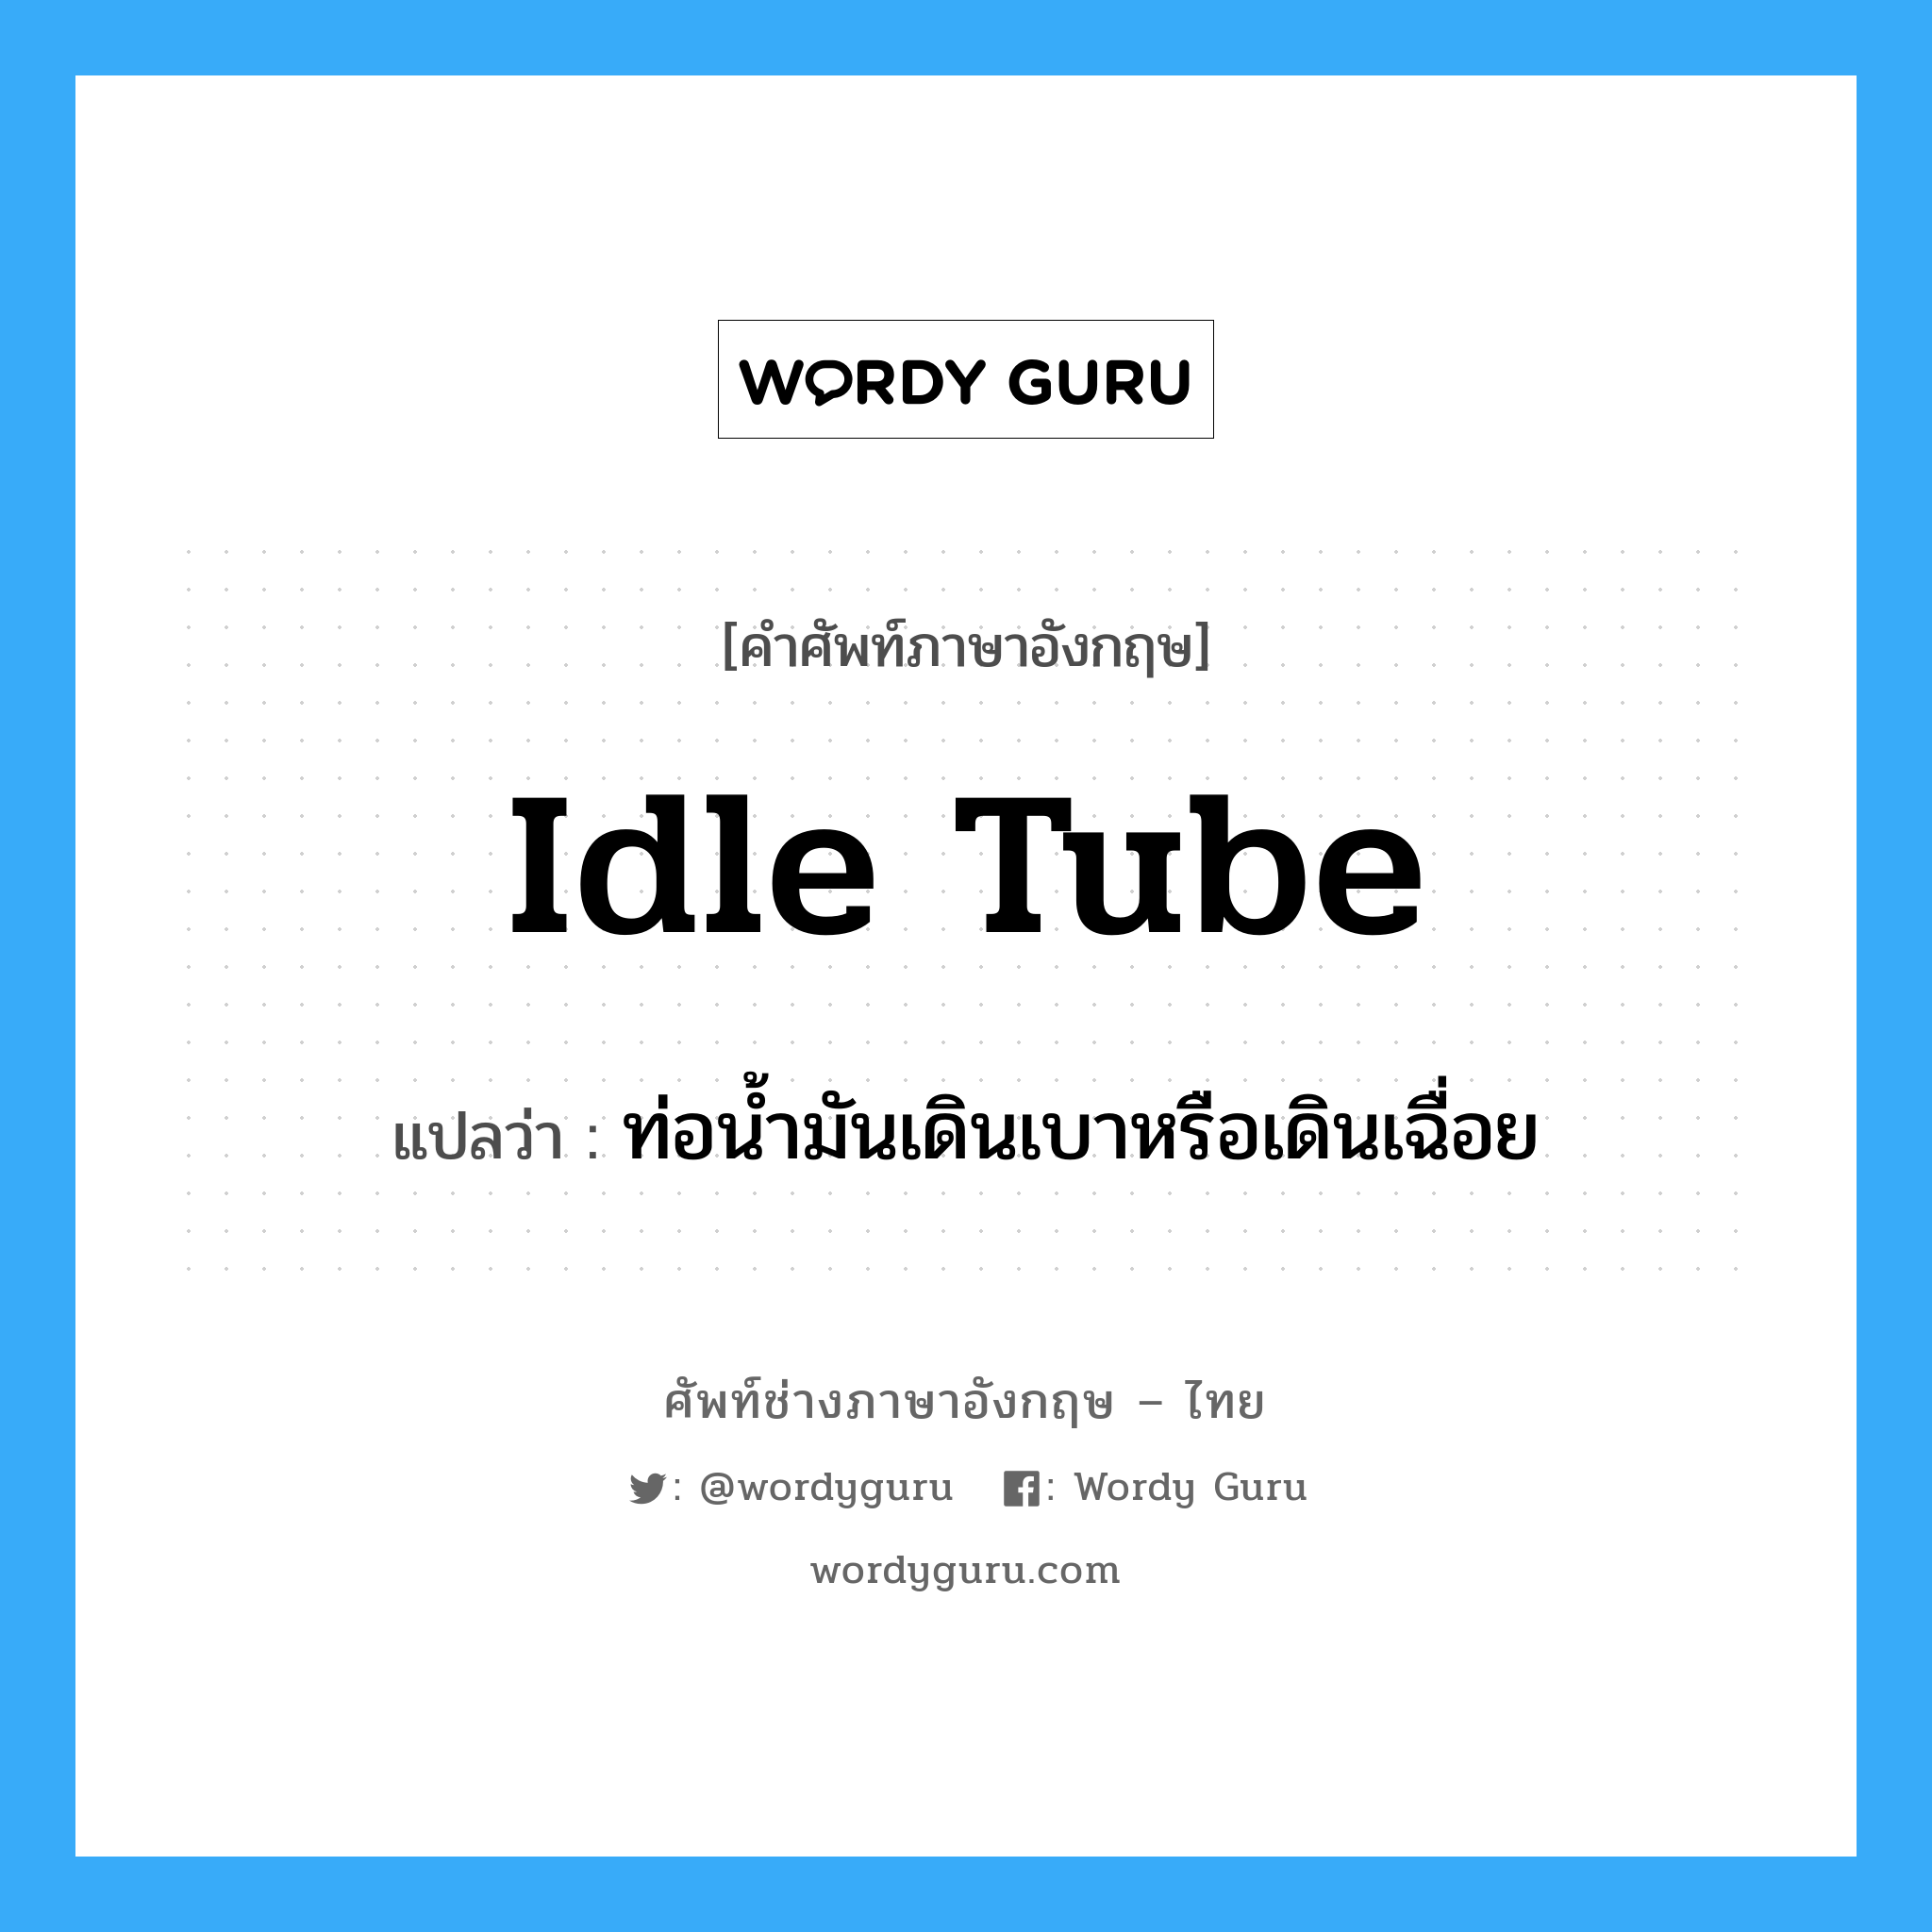 idle tube แปลว่า?, คำศัพท์ช่างภาษาอังกฤษ - ไทย idle tube คำศัพท์ภาษาอังกฤษ idle tube แปลว่า ท่อน้ำมันเดินเบาหรือเดินเฉื่อย